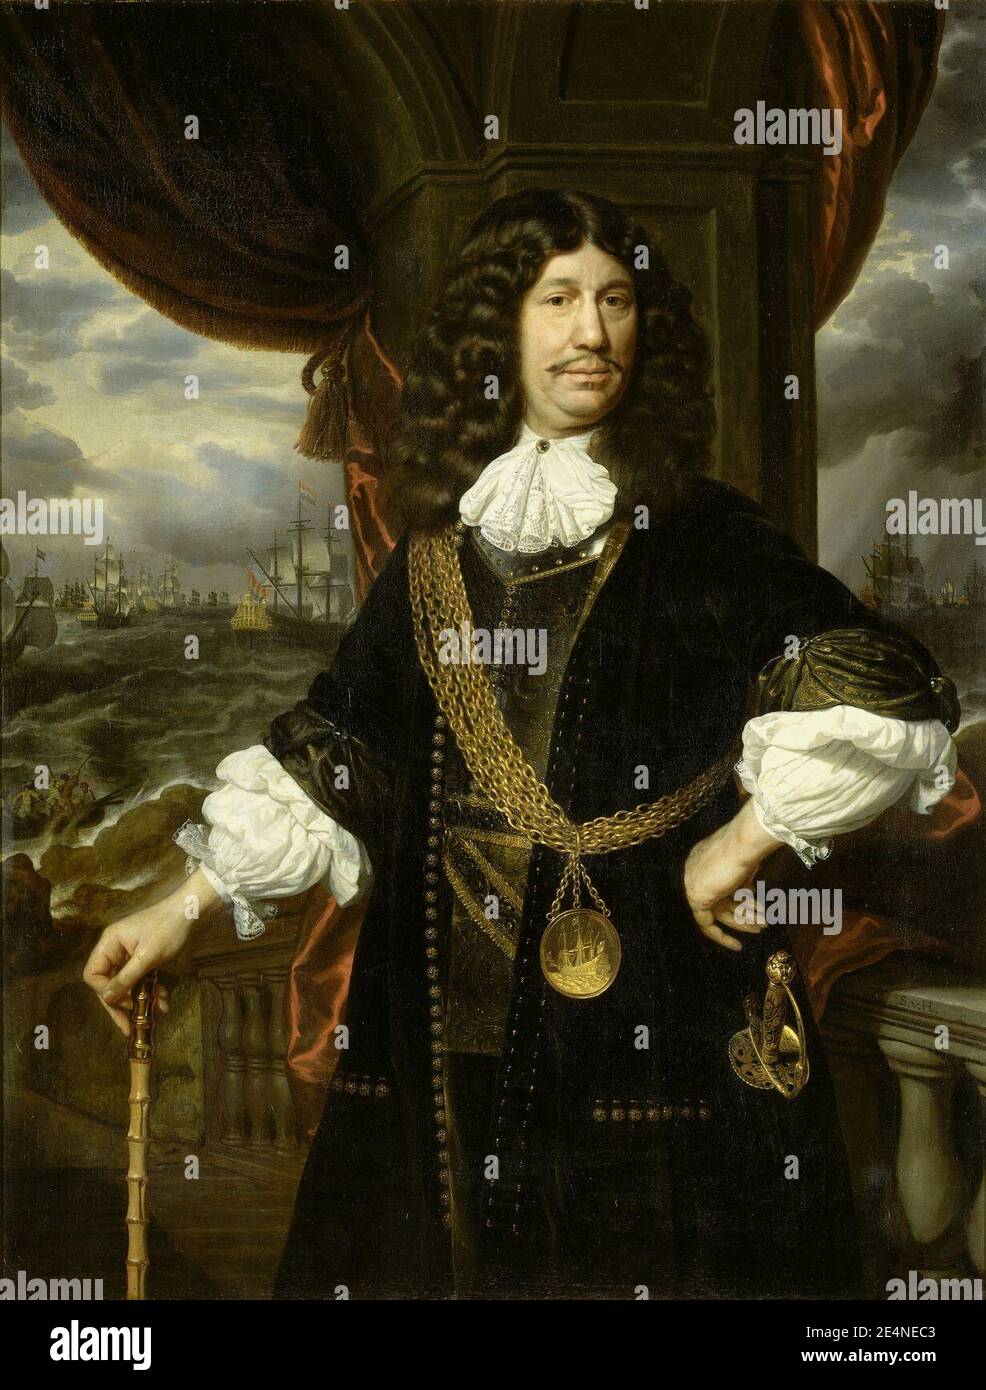 Mattheus van den Broucke (1620-85). Raad van Indie, getooid met de gouden keten en penning die hem door de VOC in 1670 werden geschonken Foto de stock